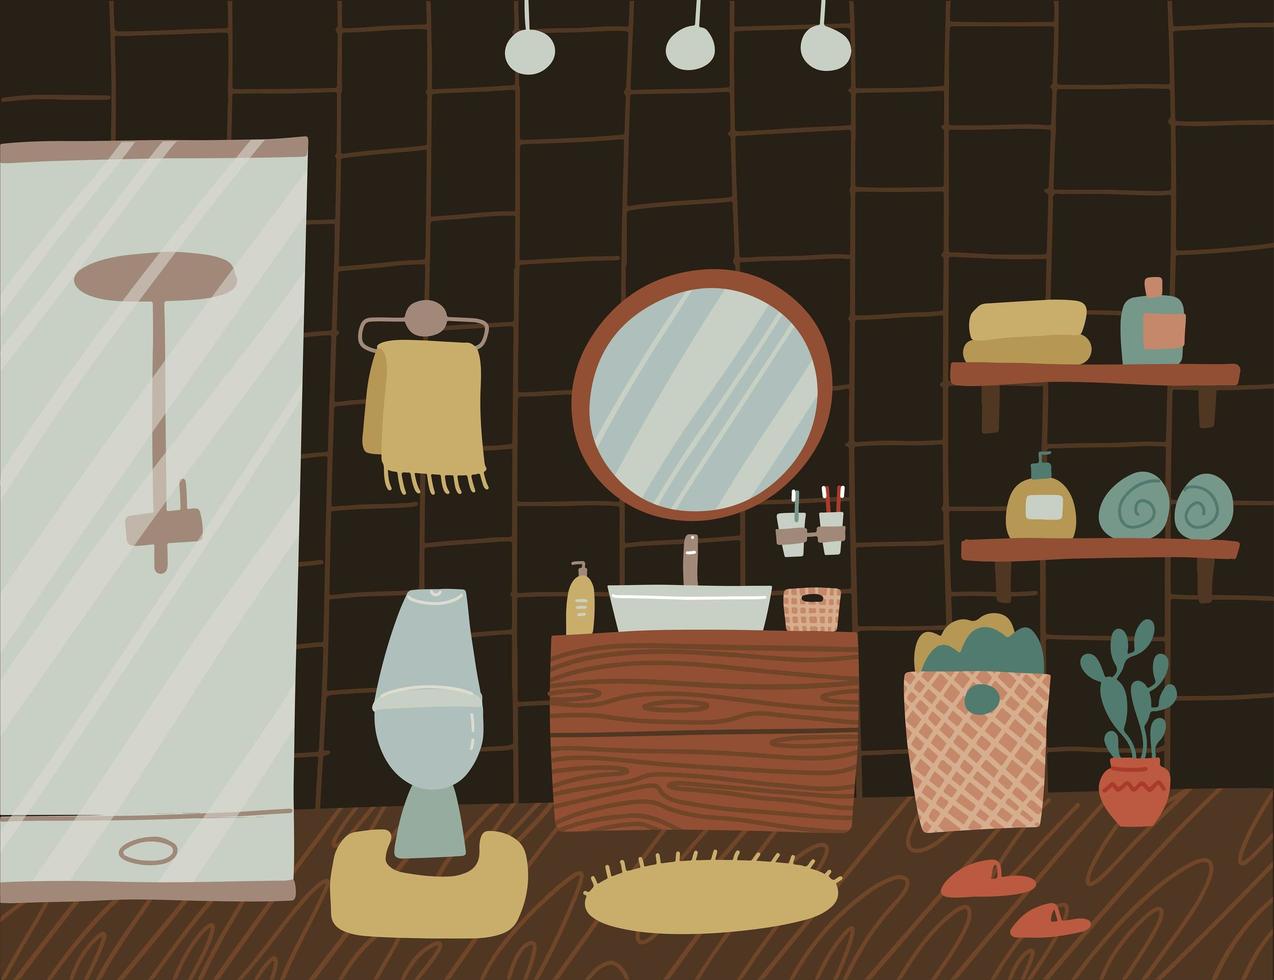 intérieur de salle de bain scandinave en bois sombre et élégant - robinet, douche, toilettes, lavabo, décorations pour la maison. appartement confortable et moderne meublé dans un style hygge. illustration vectorielle plate vecteur